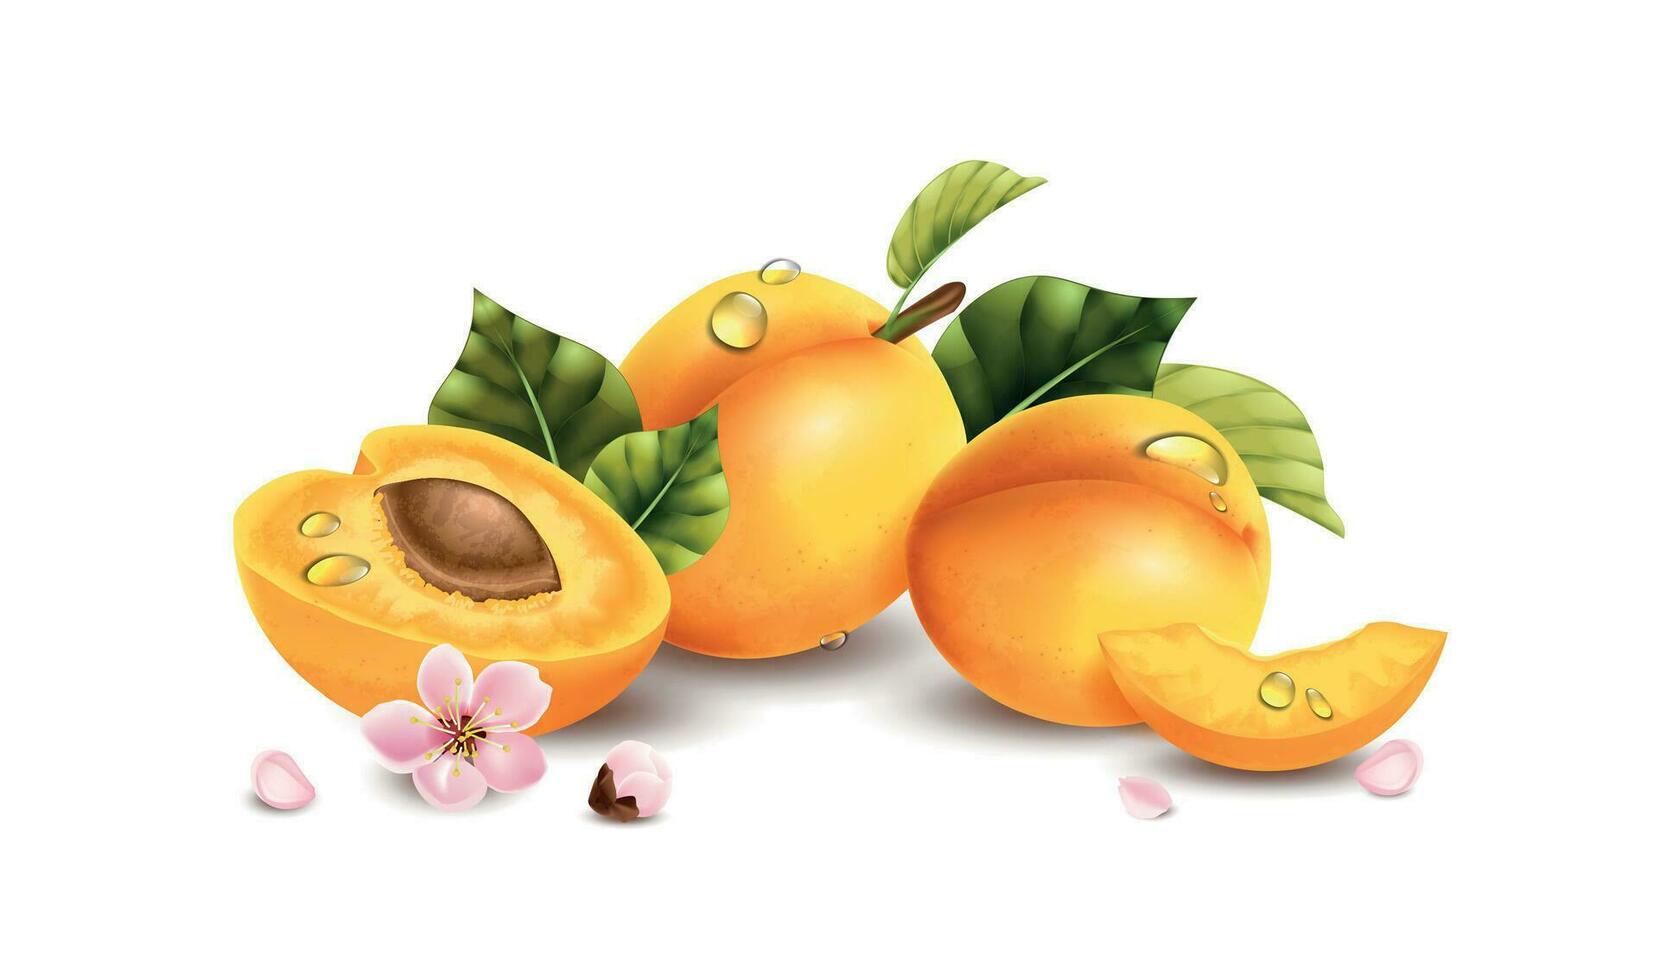 réaliste abricot fleurs composition vecteur